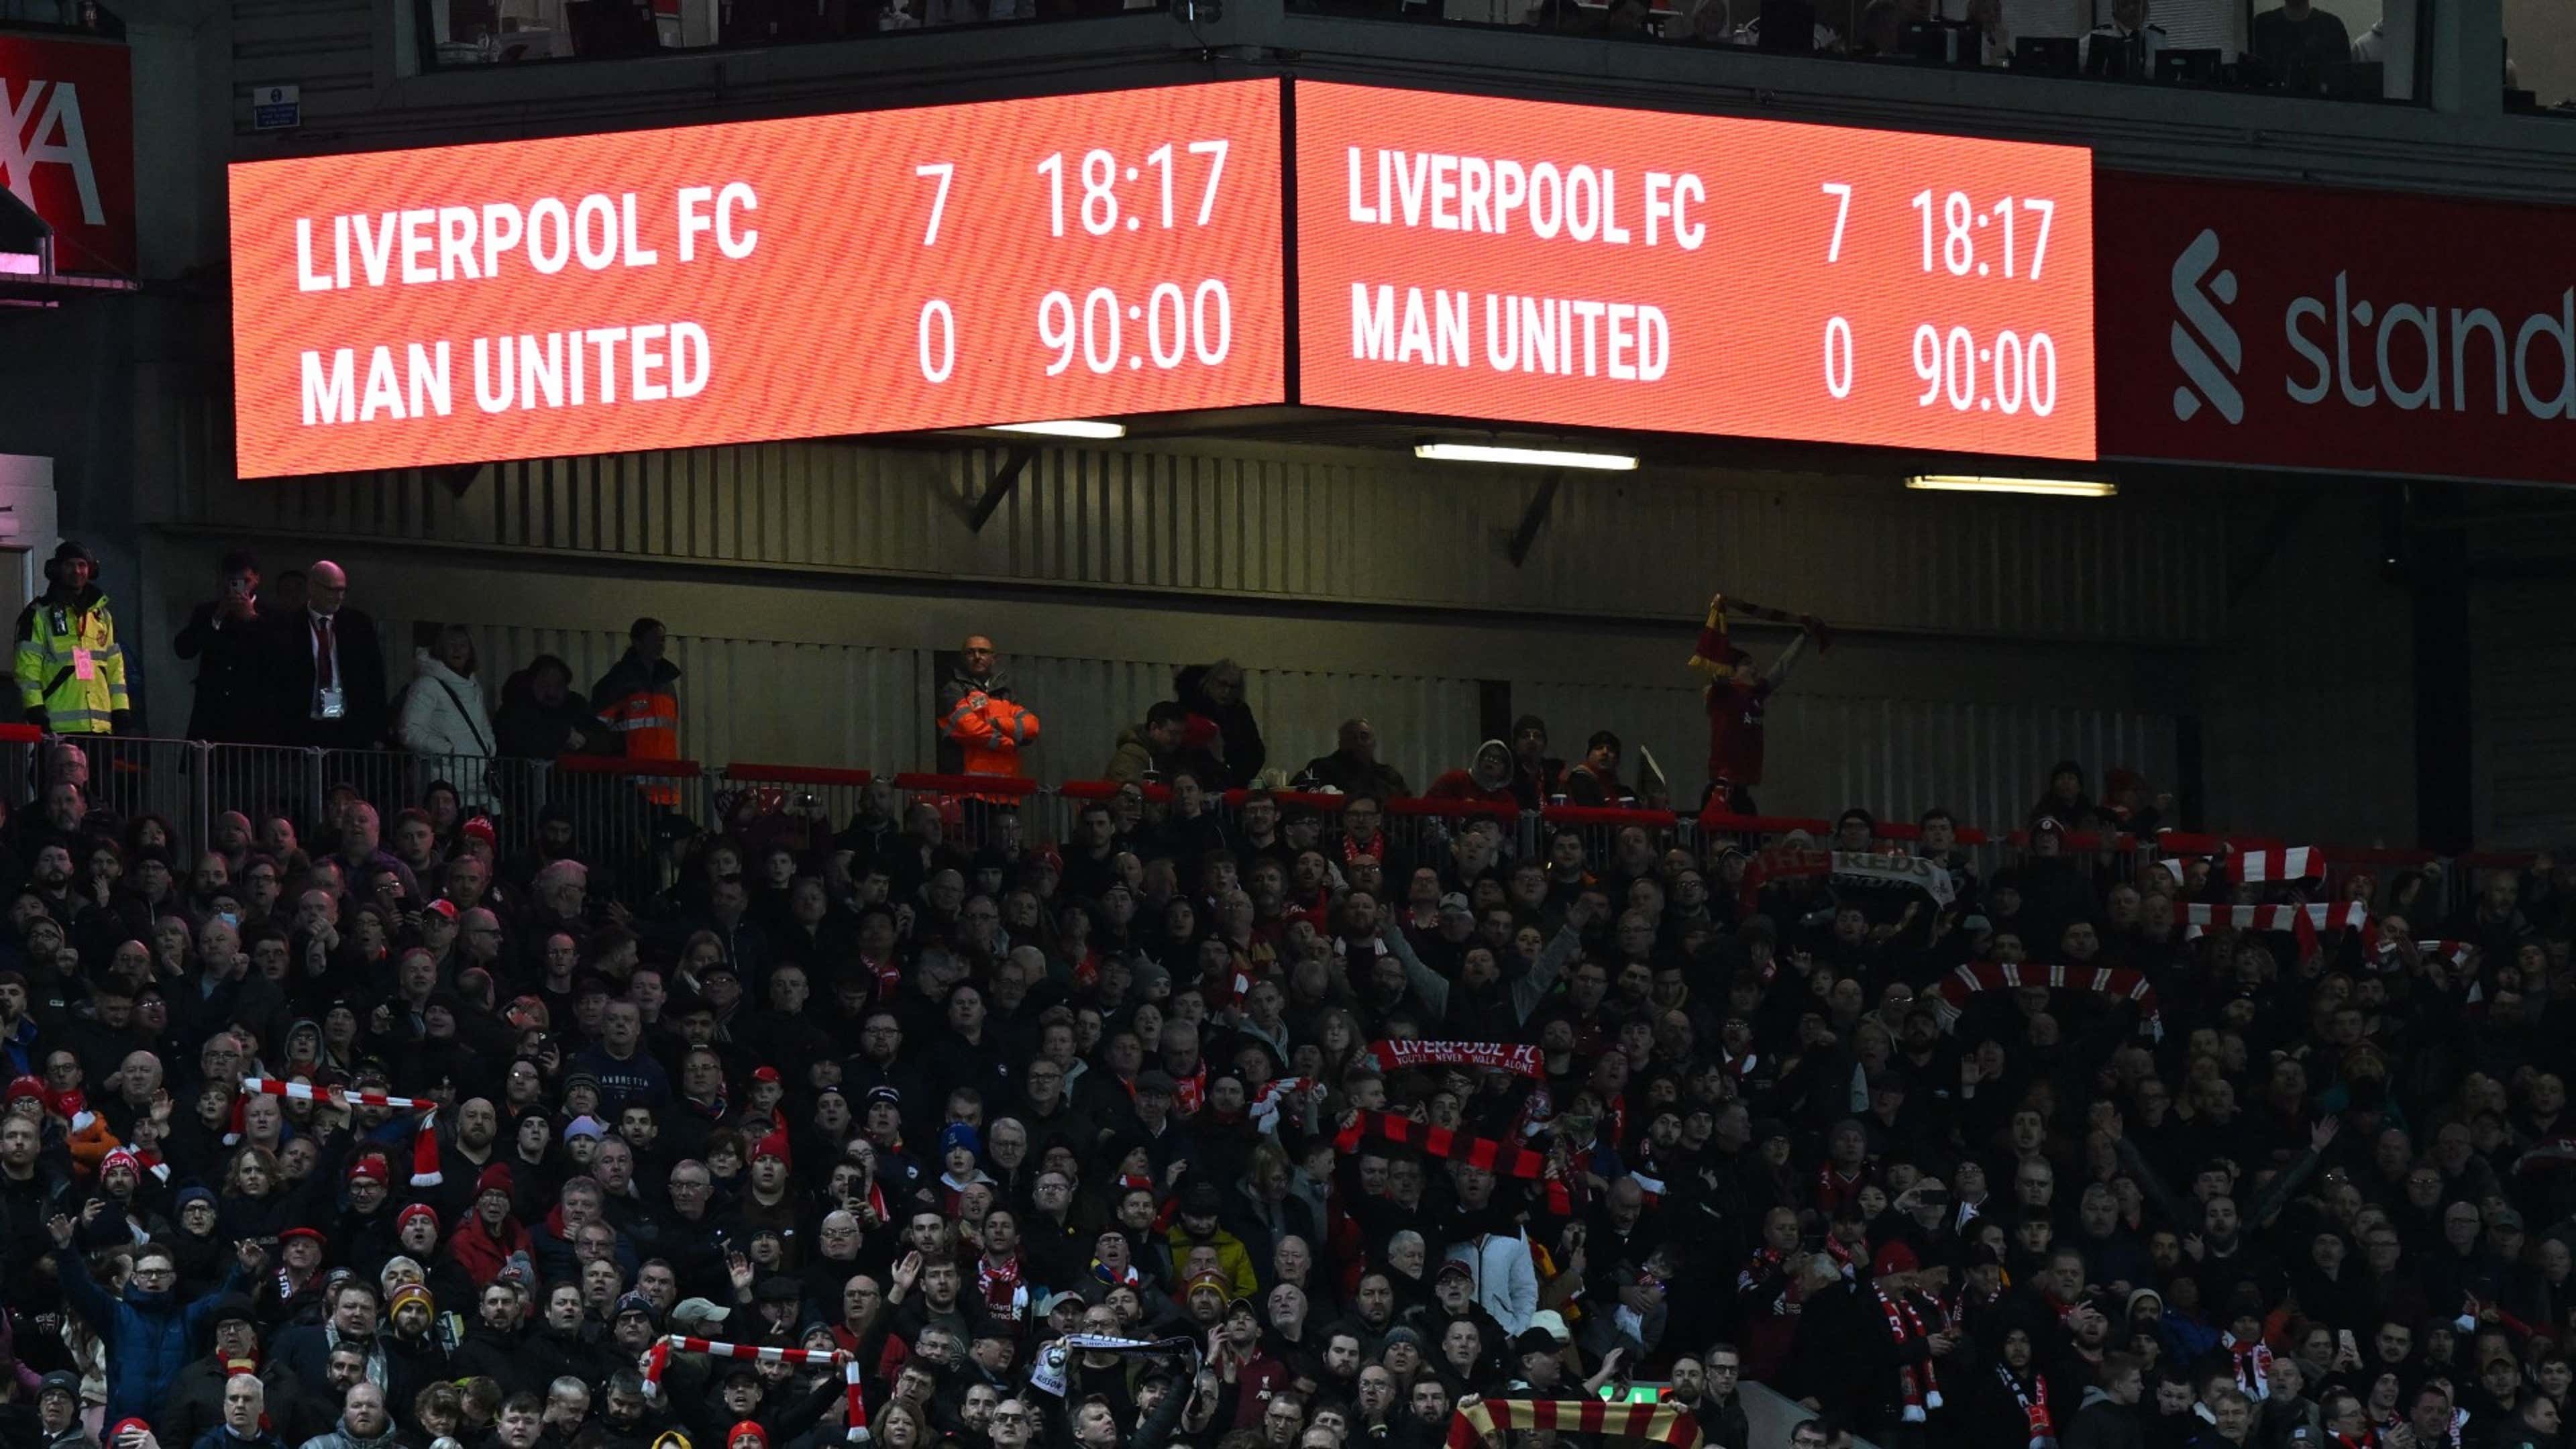 Liverpool Man Utd 7-0 scoreboard